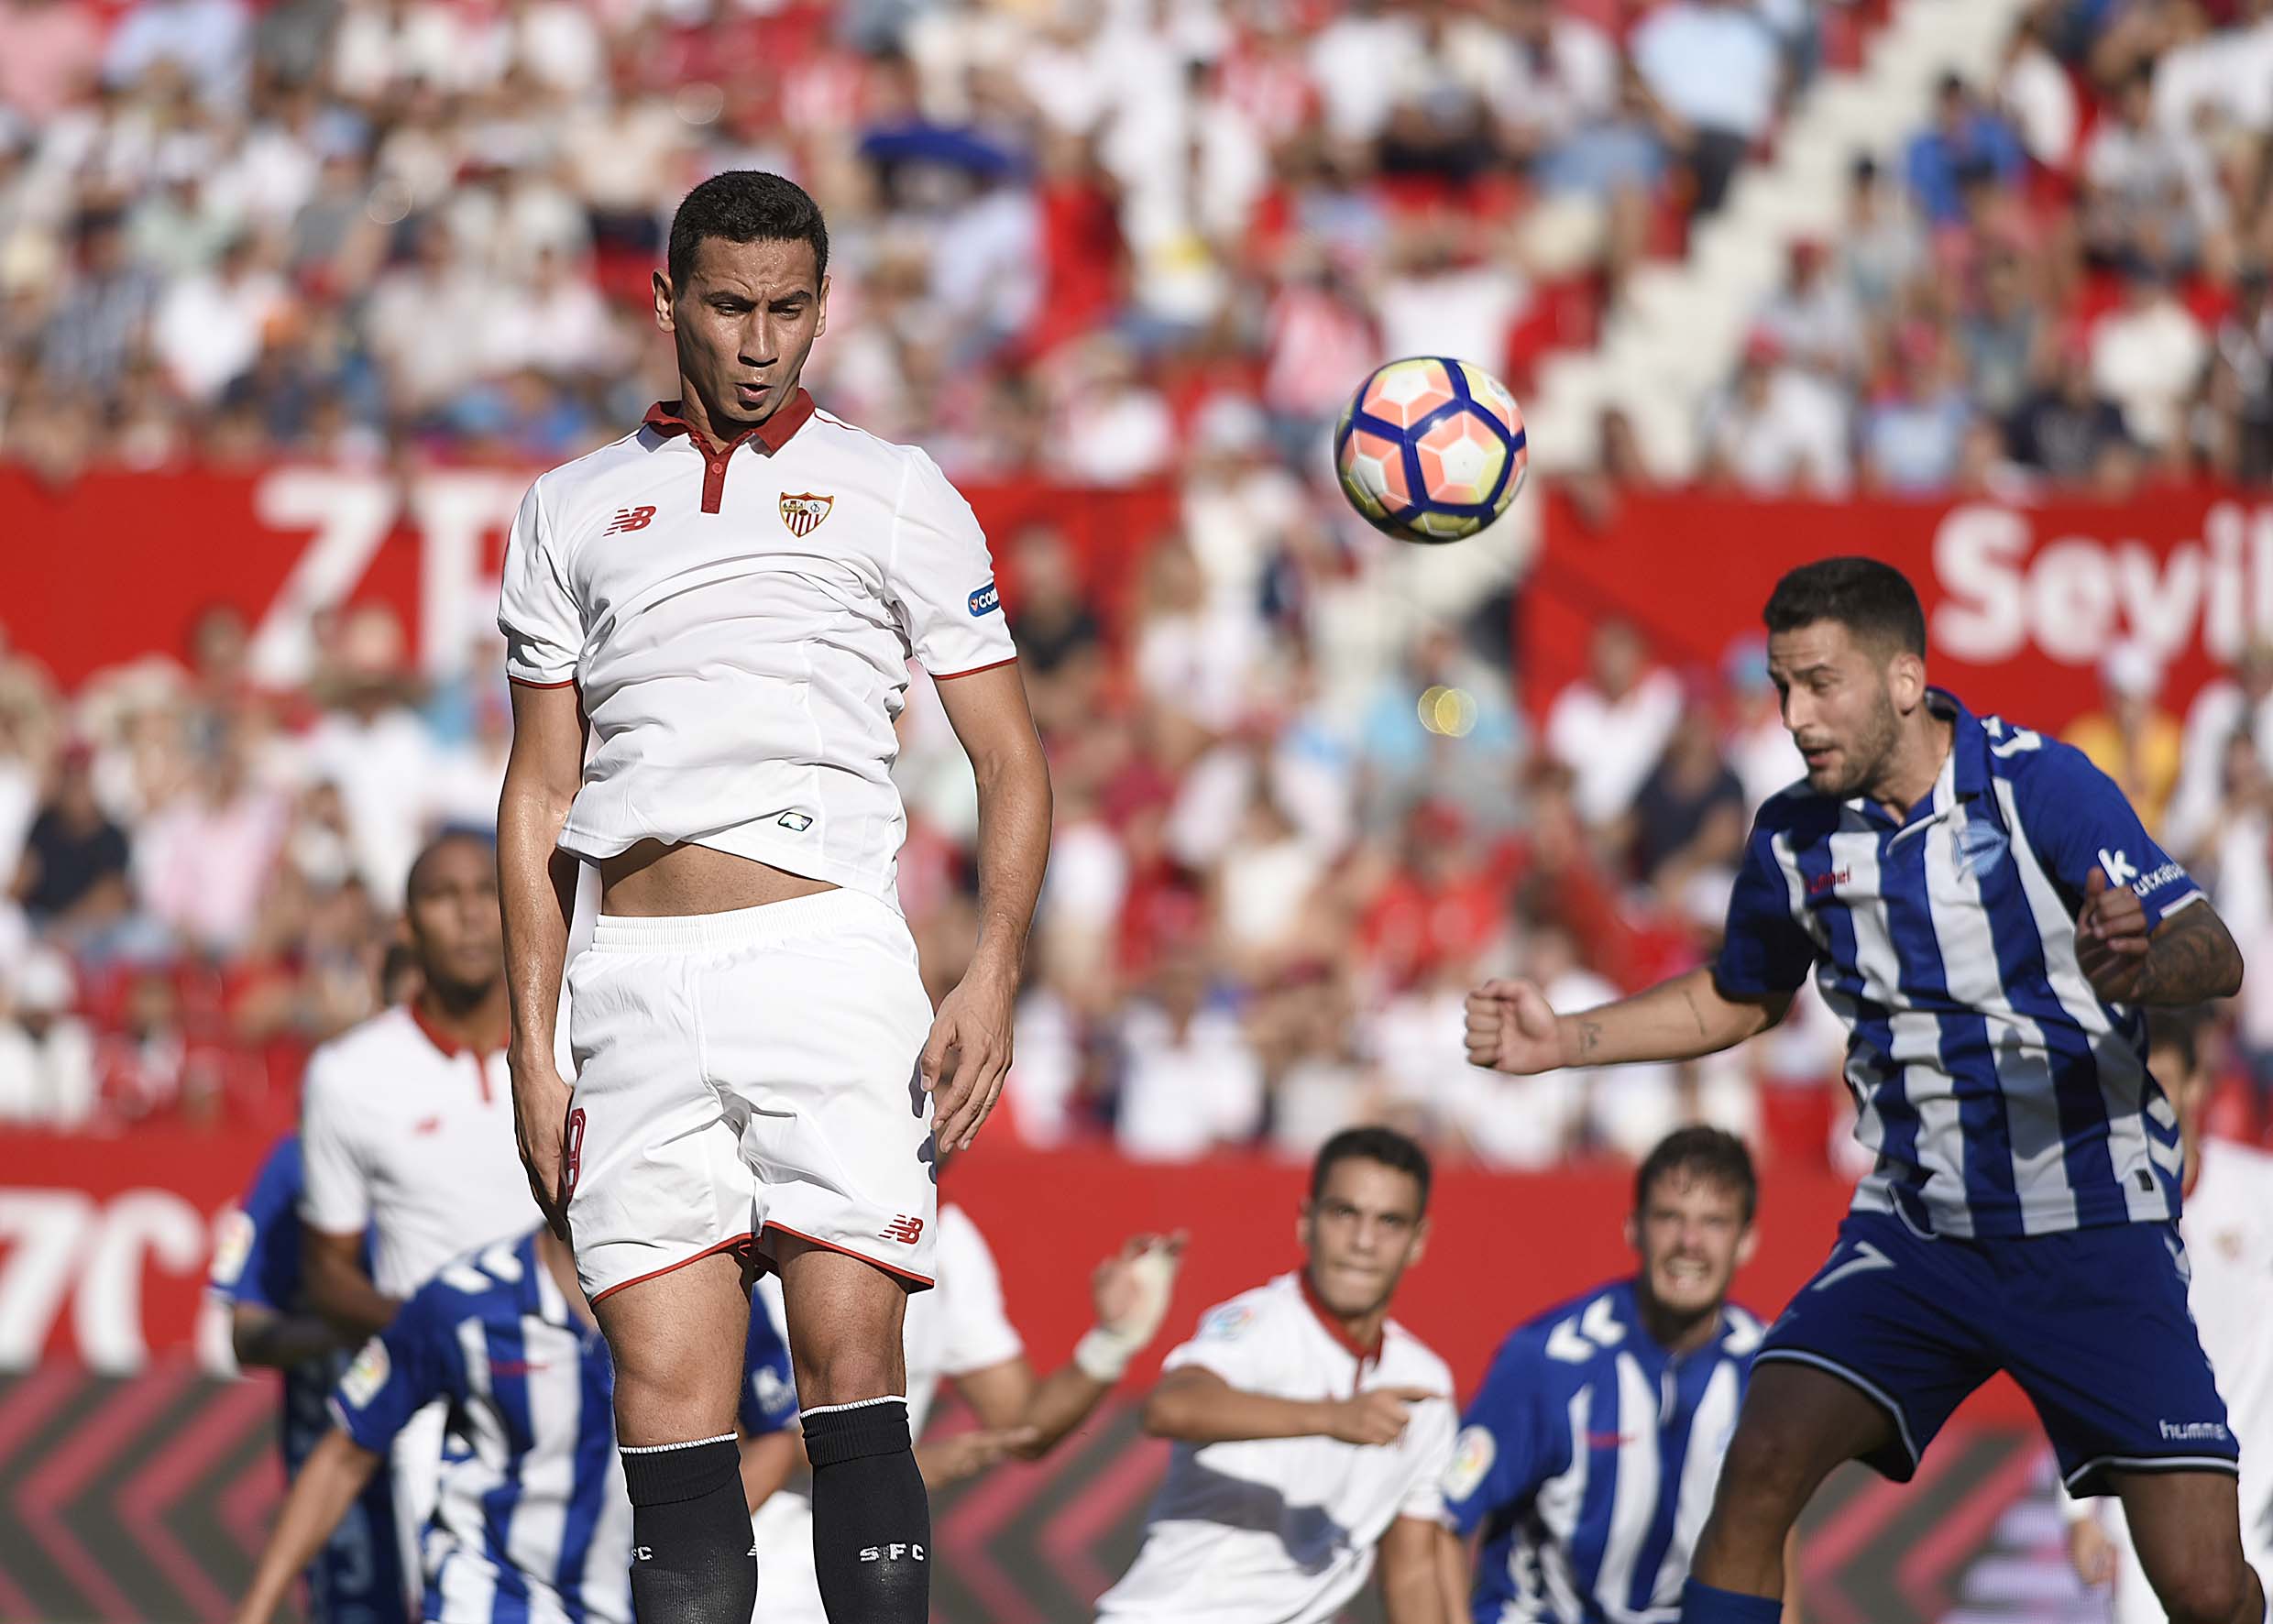 Ganso, en el Sevilla FC-Alavés